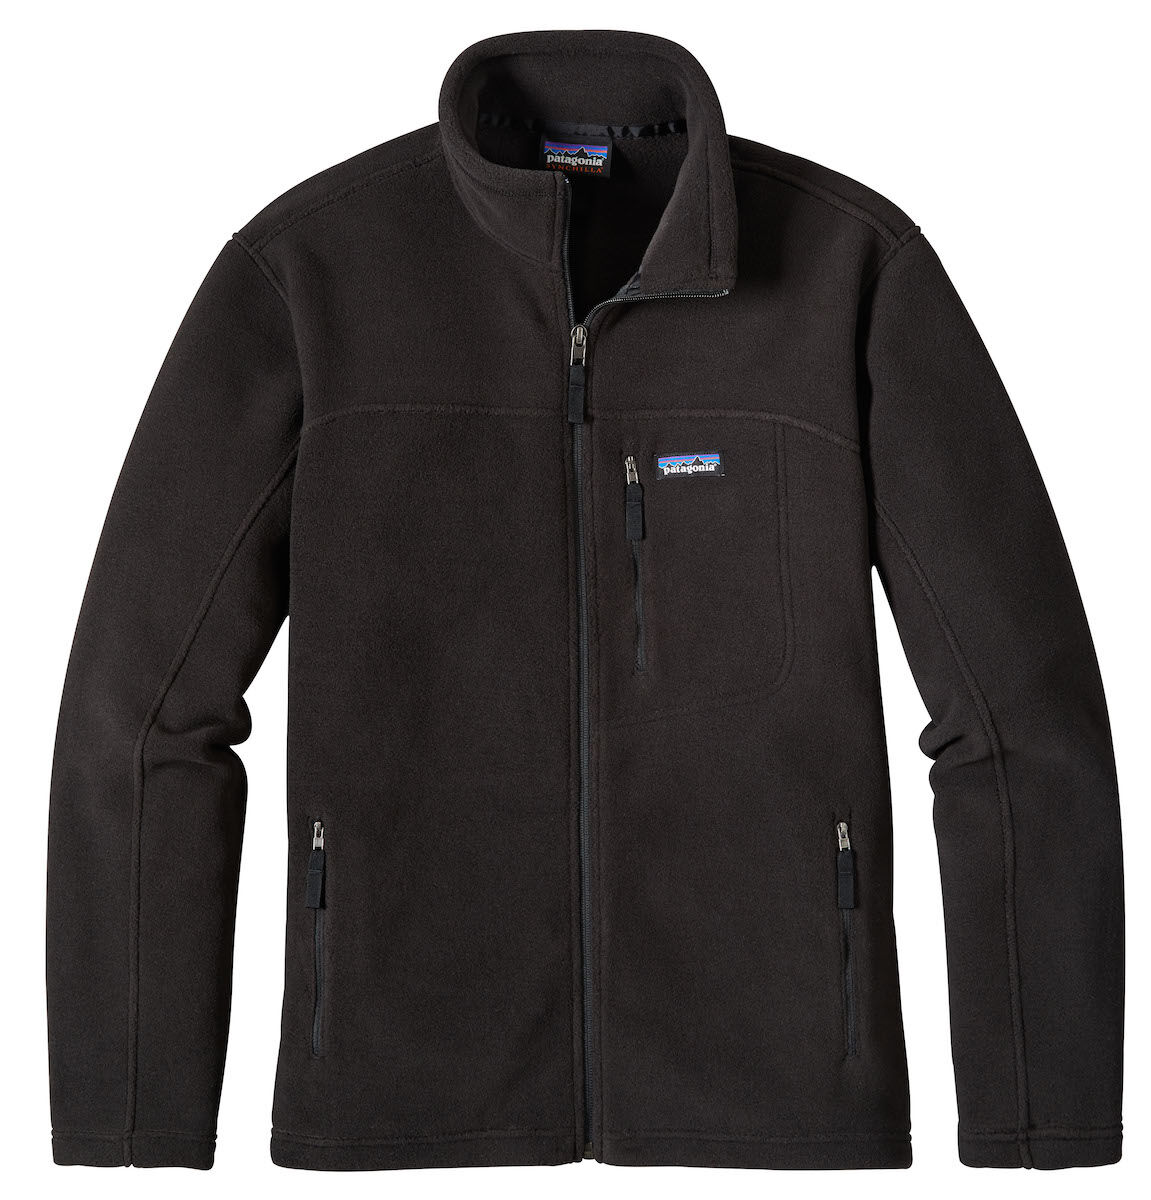 Patagonia - Classic Synchilla® Fleece Jacket - Fleece jacket - Men's